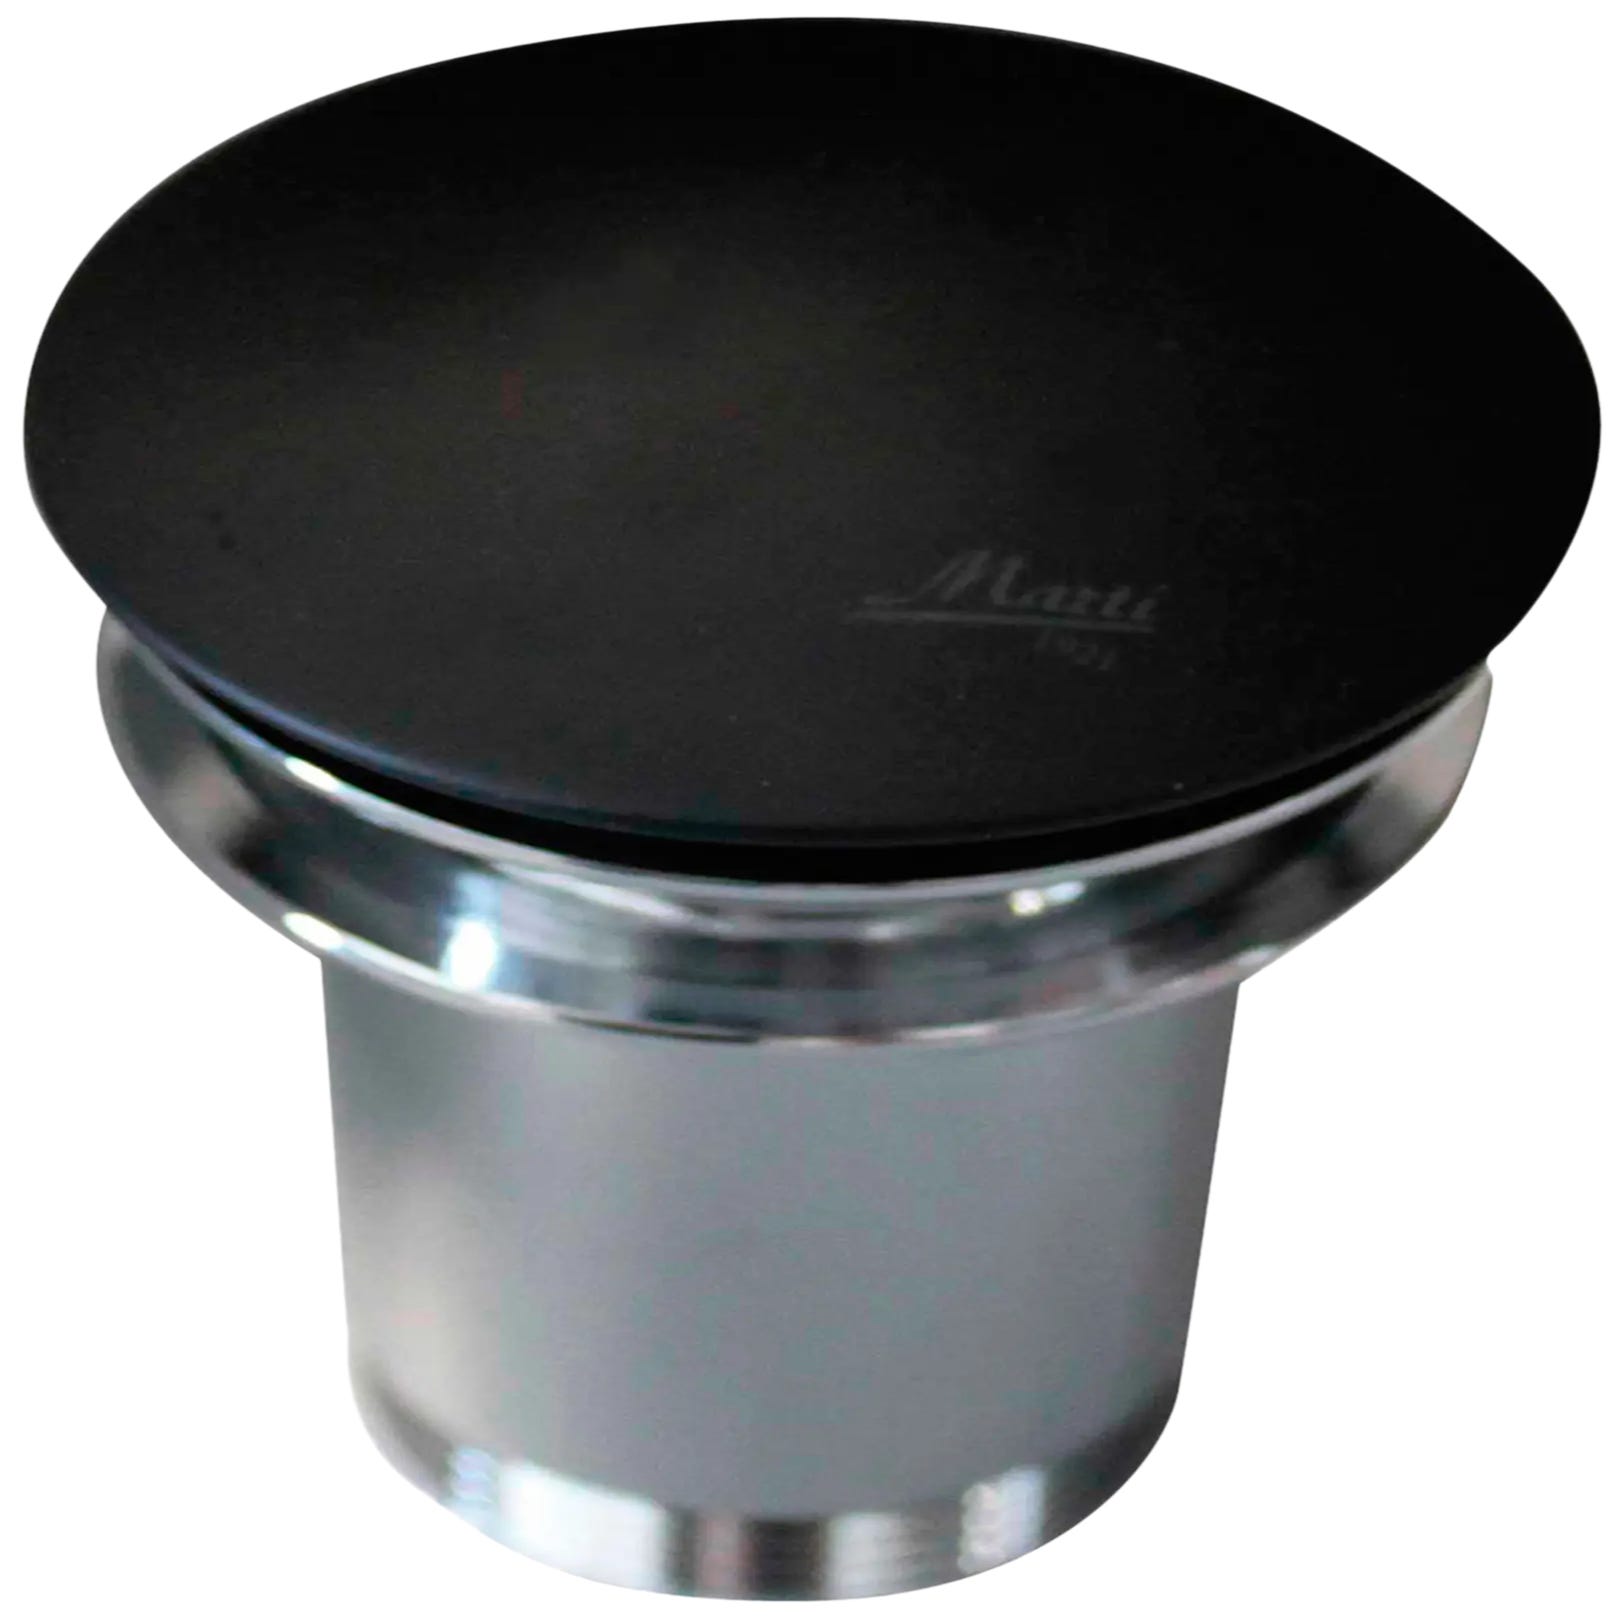 Válvula de desagüe para lavabo con sistema click clack con tapón superior  de 4 cm de